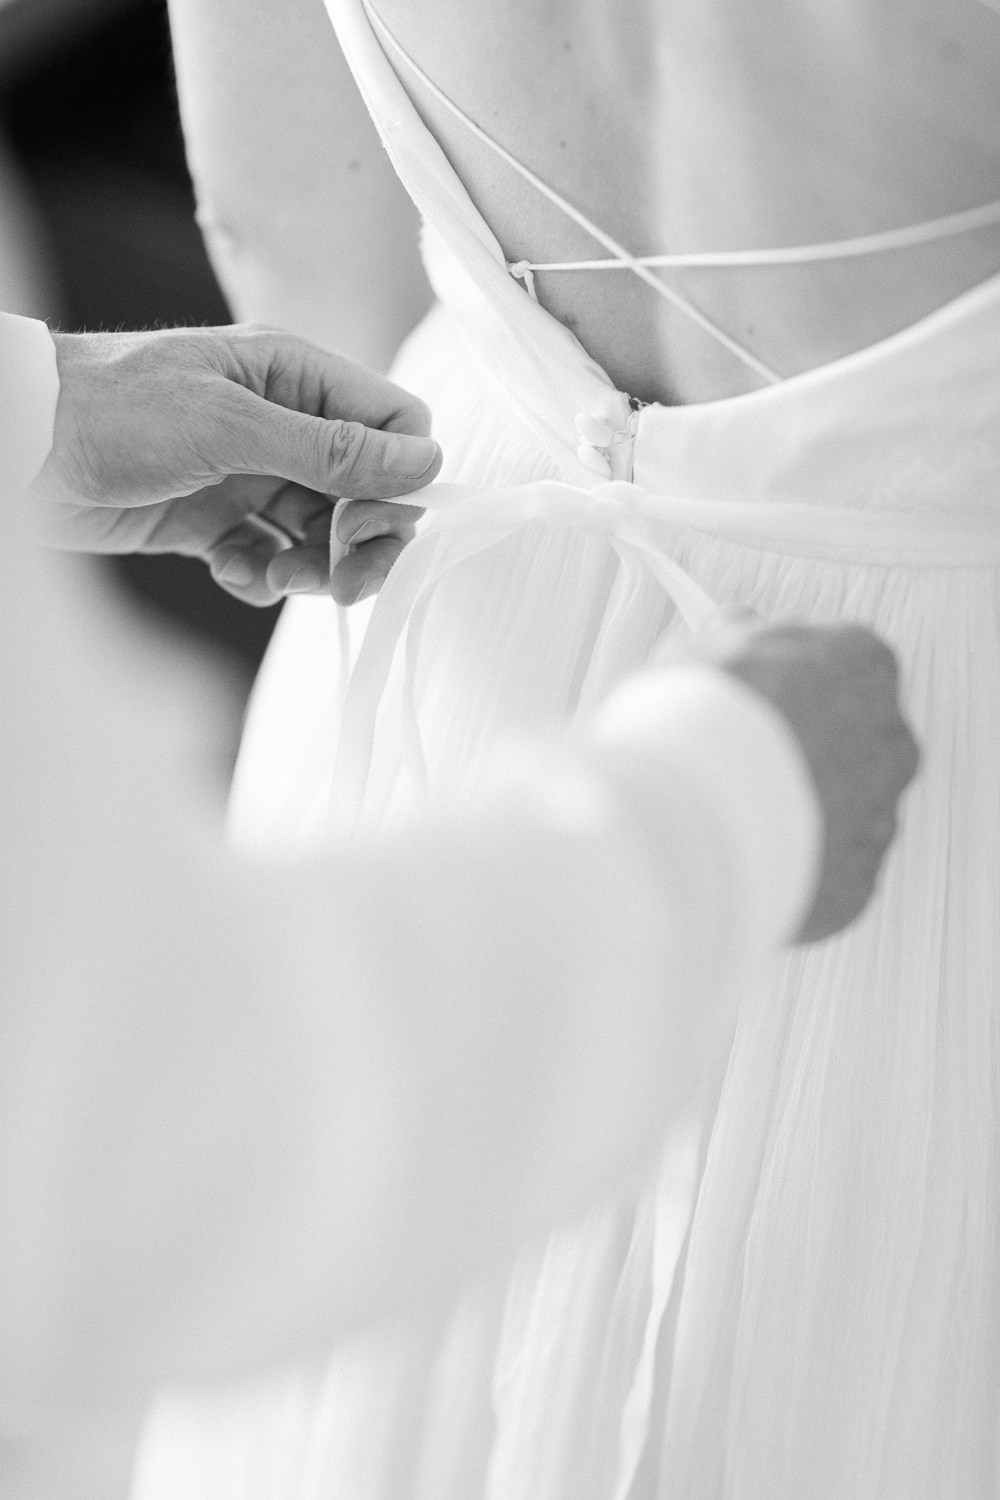 Bräutigam hilft der Braut beim Anziehen des Hochzeitskleides (Hochzeitsreportage in Luzern)